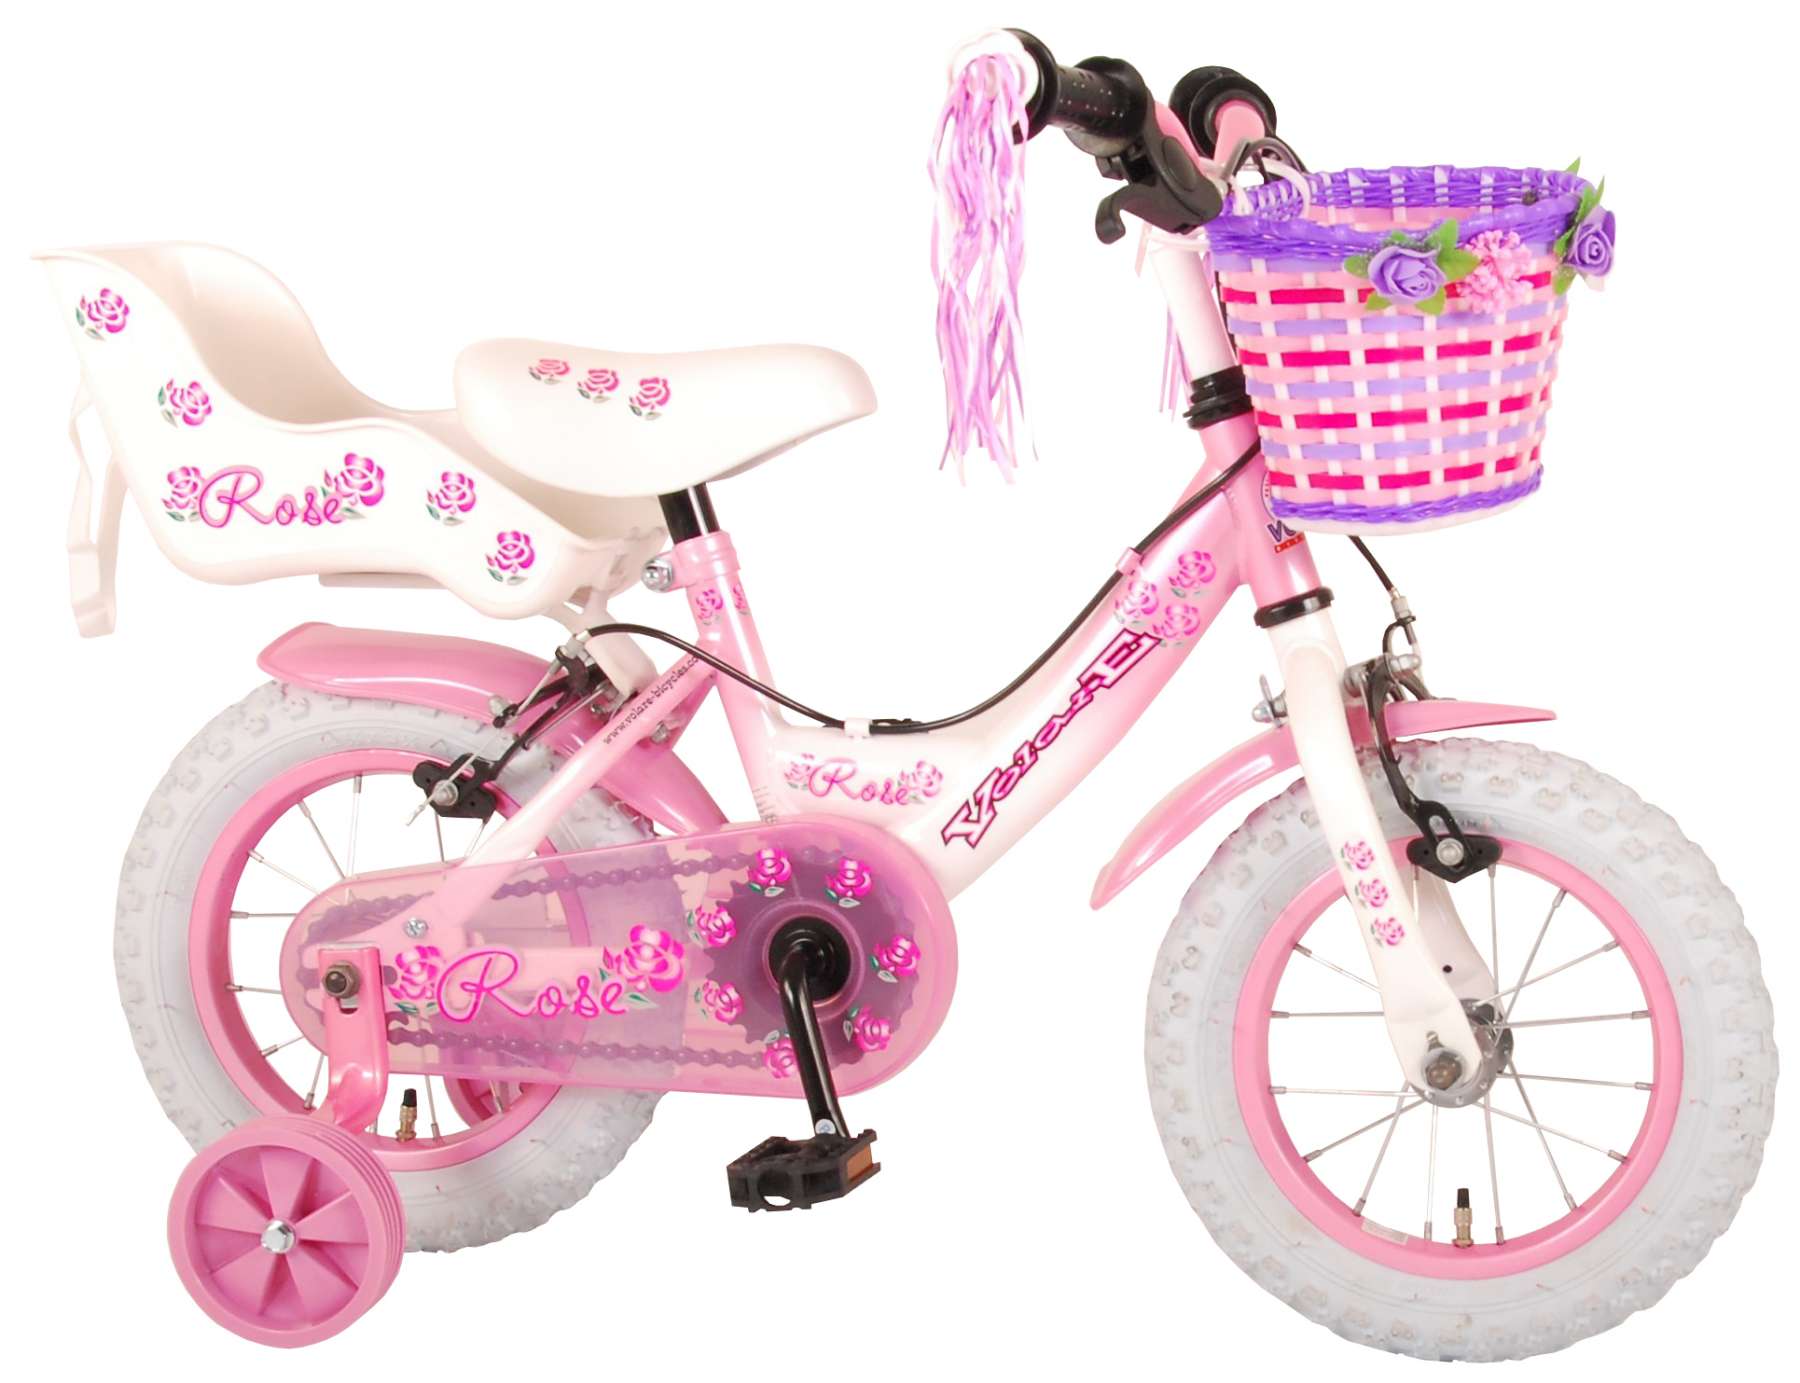 Volare Rose Kinderfahrrad - Mädchen - 12 Zoll - Pink - Zwei Handbremsen